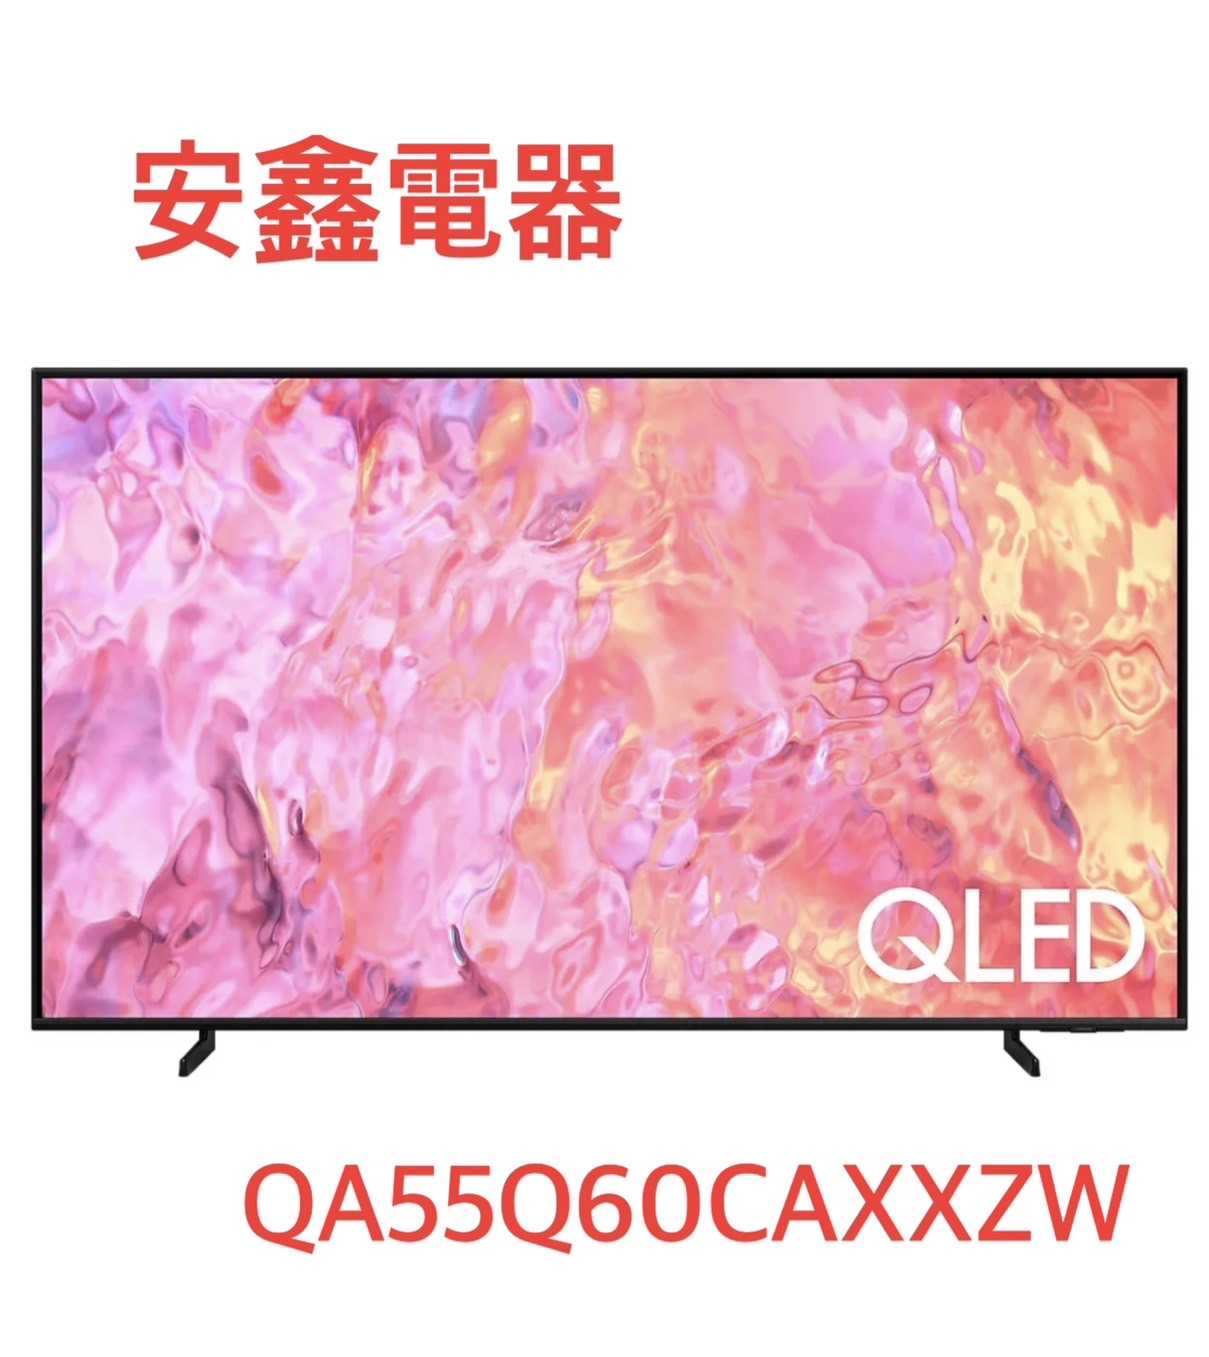 結帳折1000 SAMSUNG 三星 55吋 QLED 4K 量子電視 【QA55Q60CA】 含基本安裝